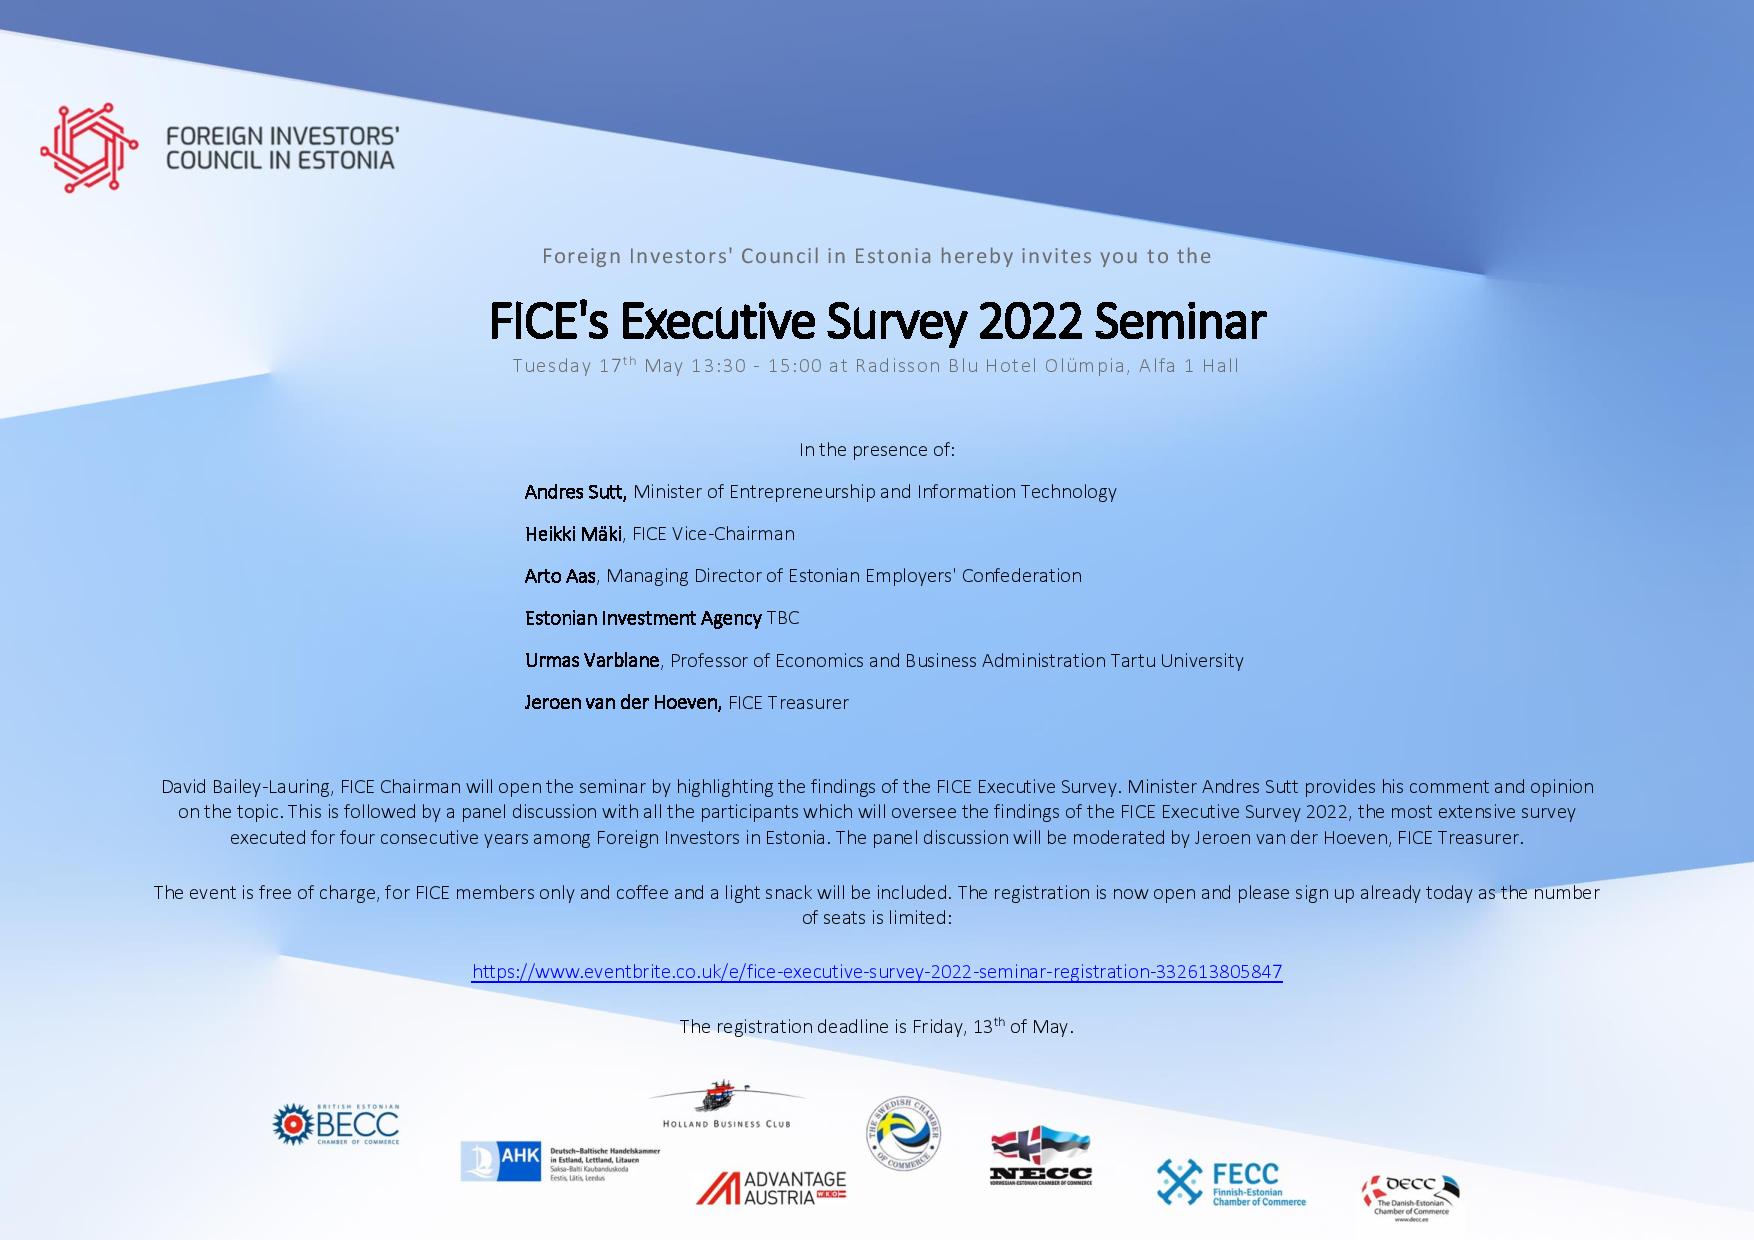 FICE's Executive Survey 2022 Seminar